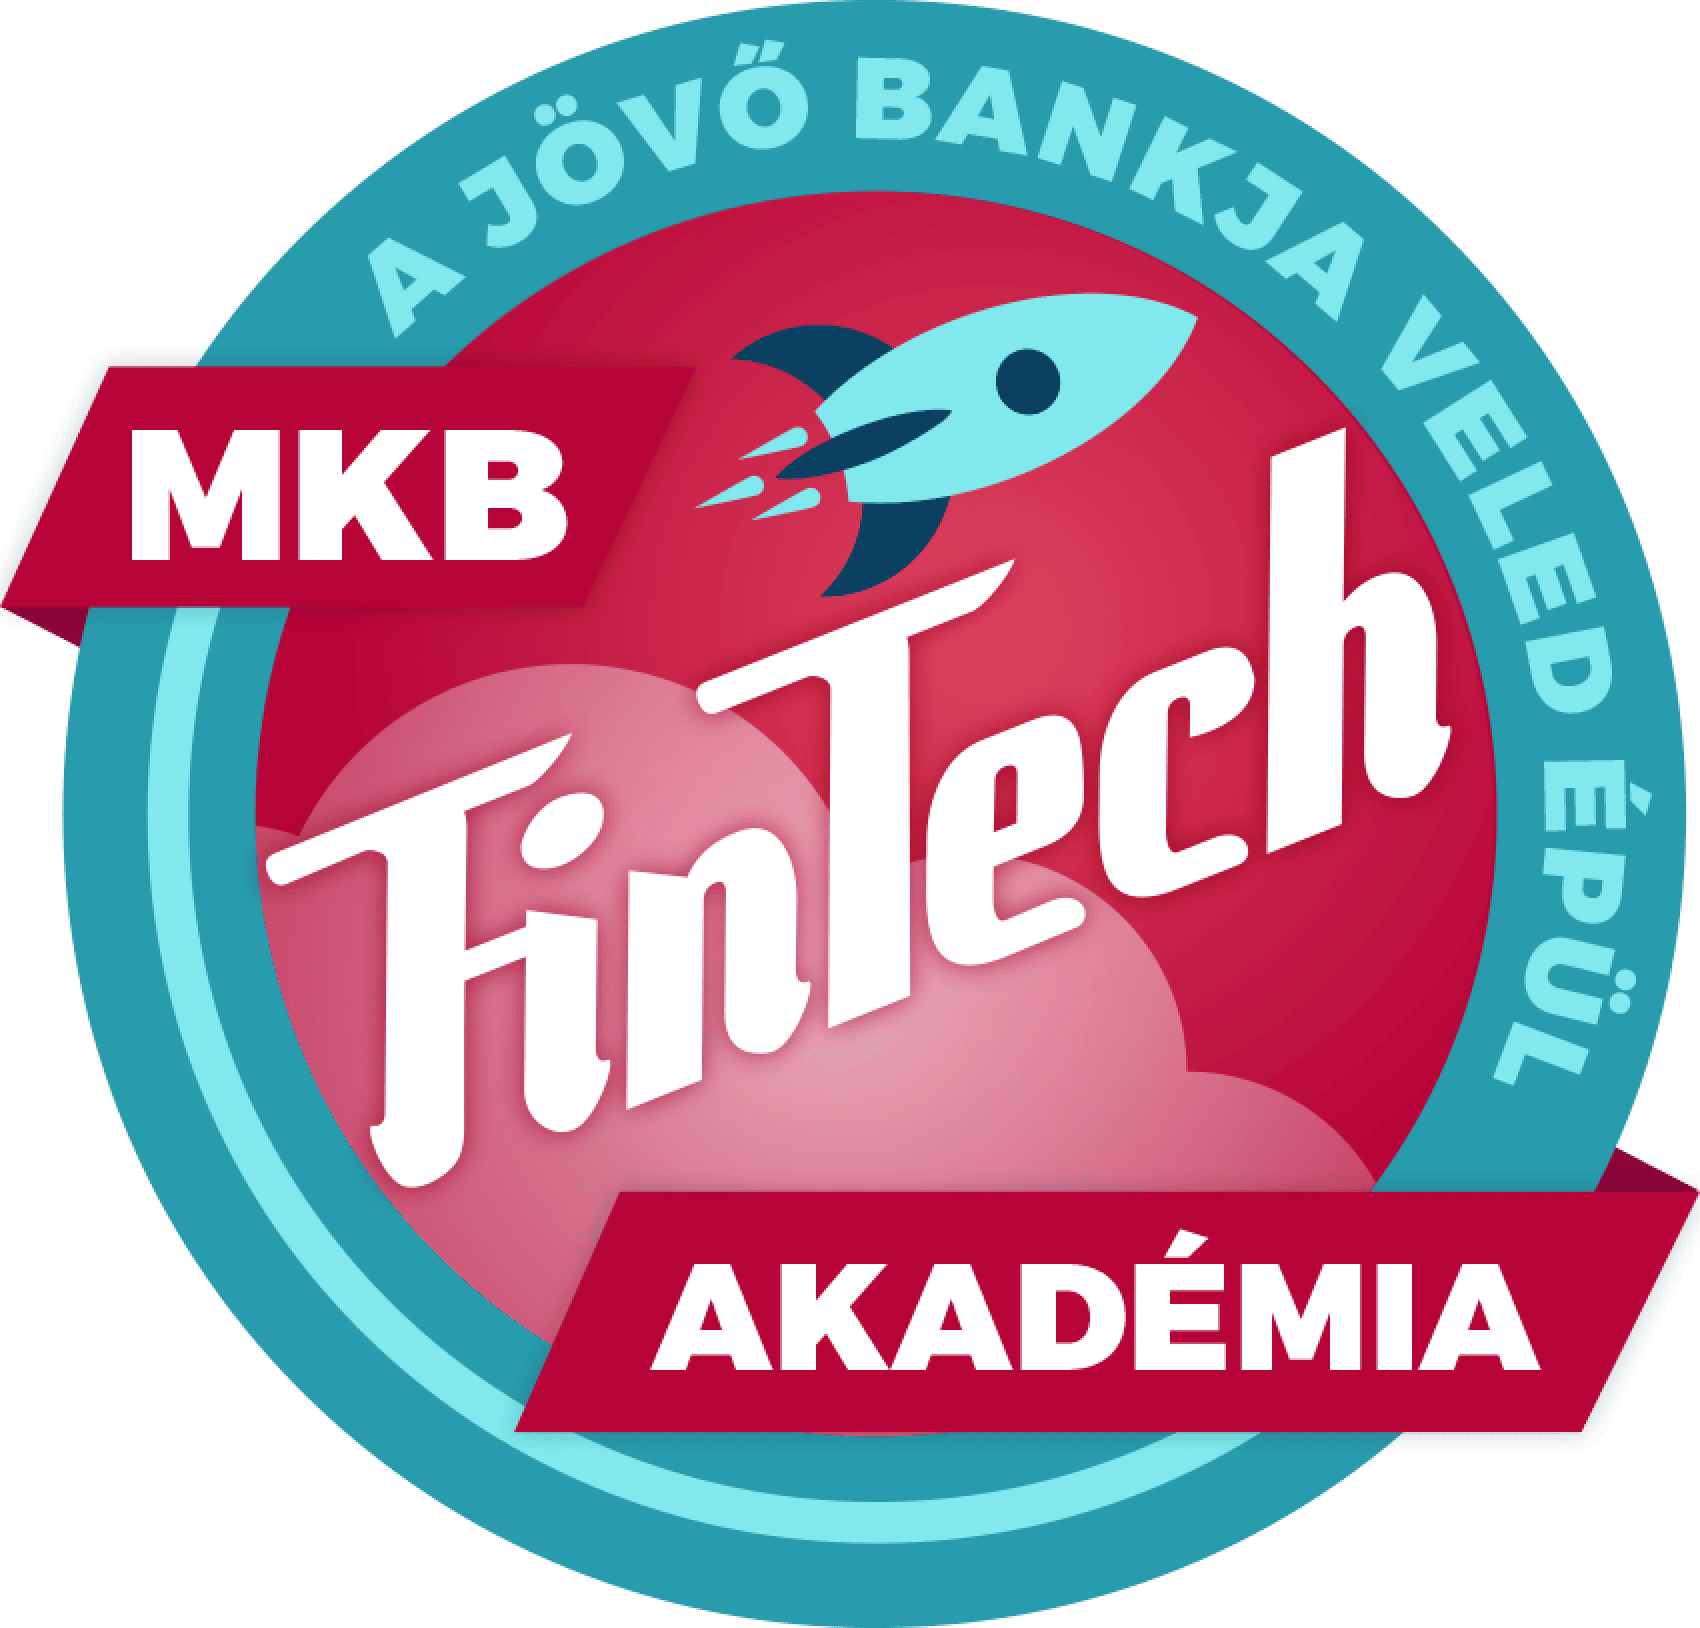 MKB Fintech Akadémia project